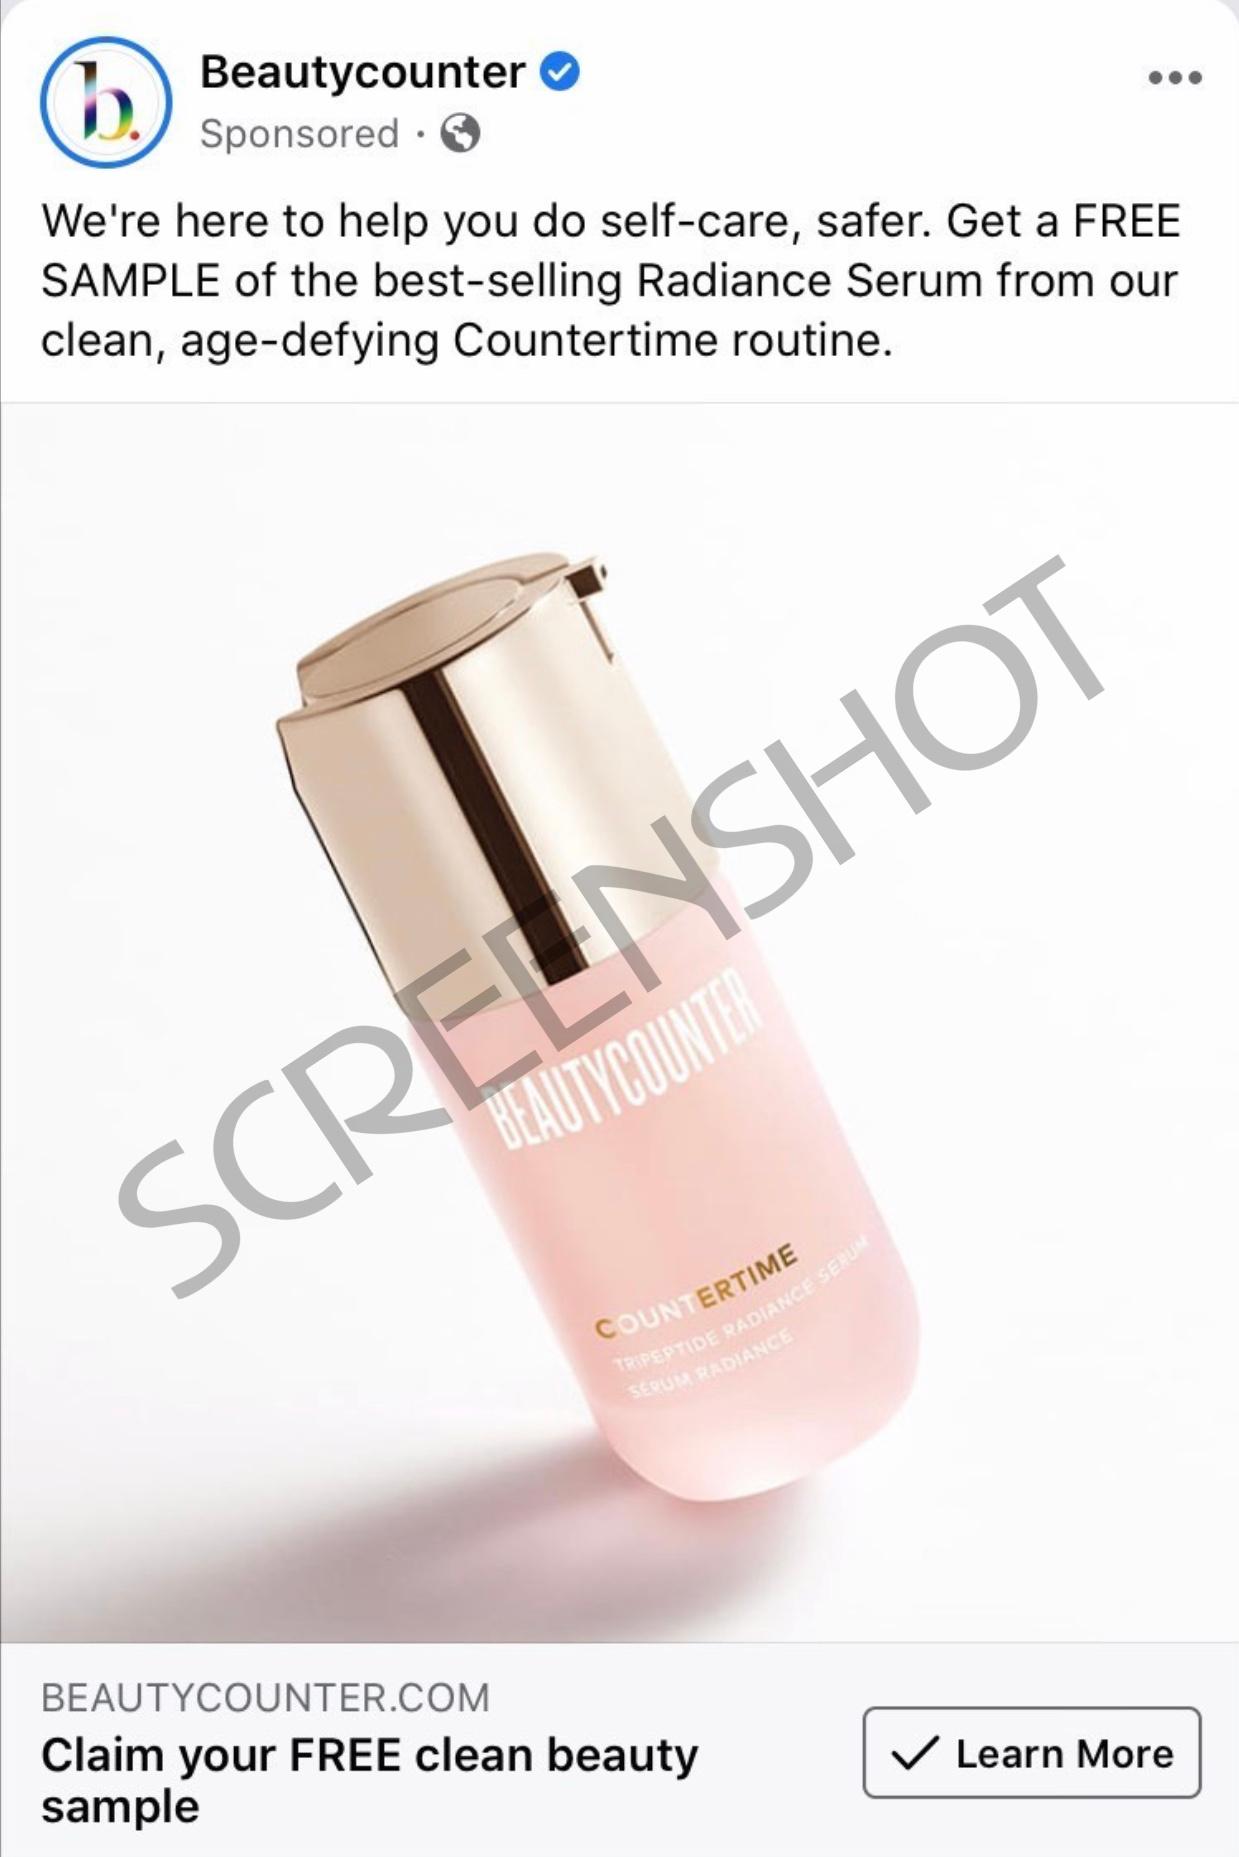 Beautycounter Sponsored Ad on Facebook